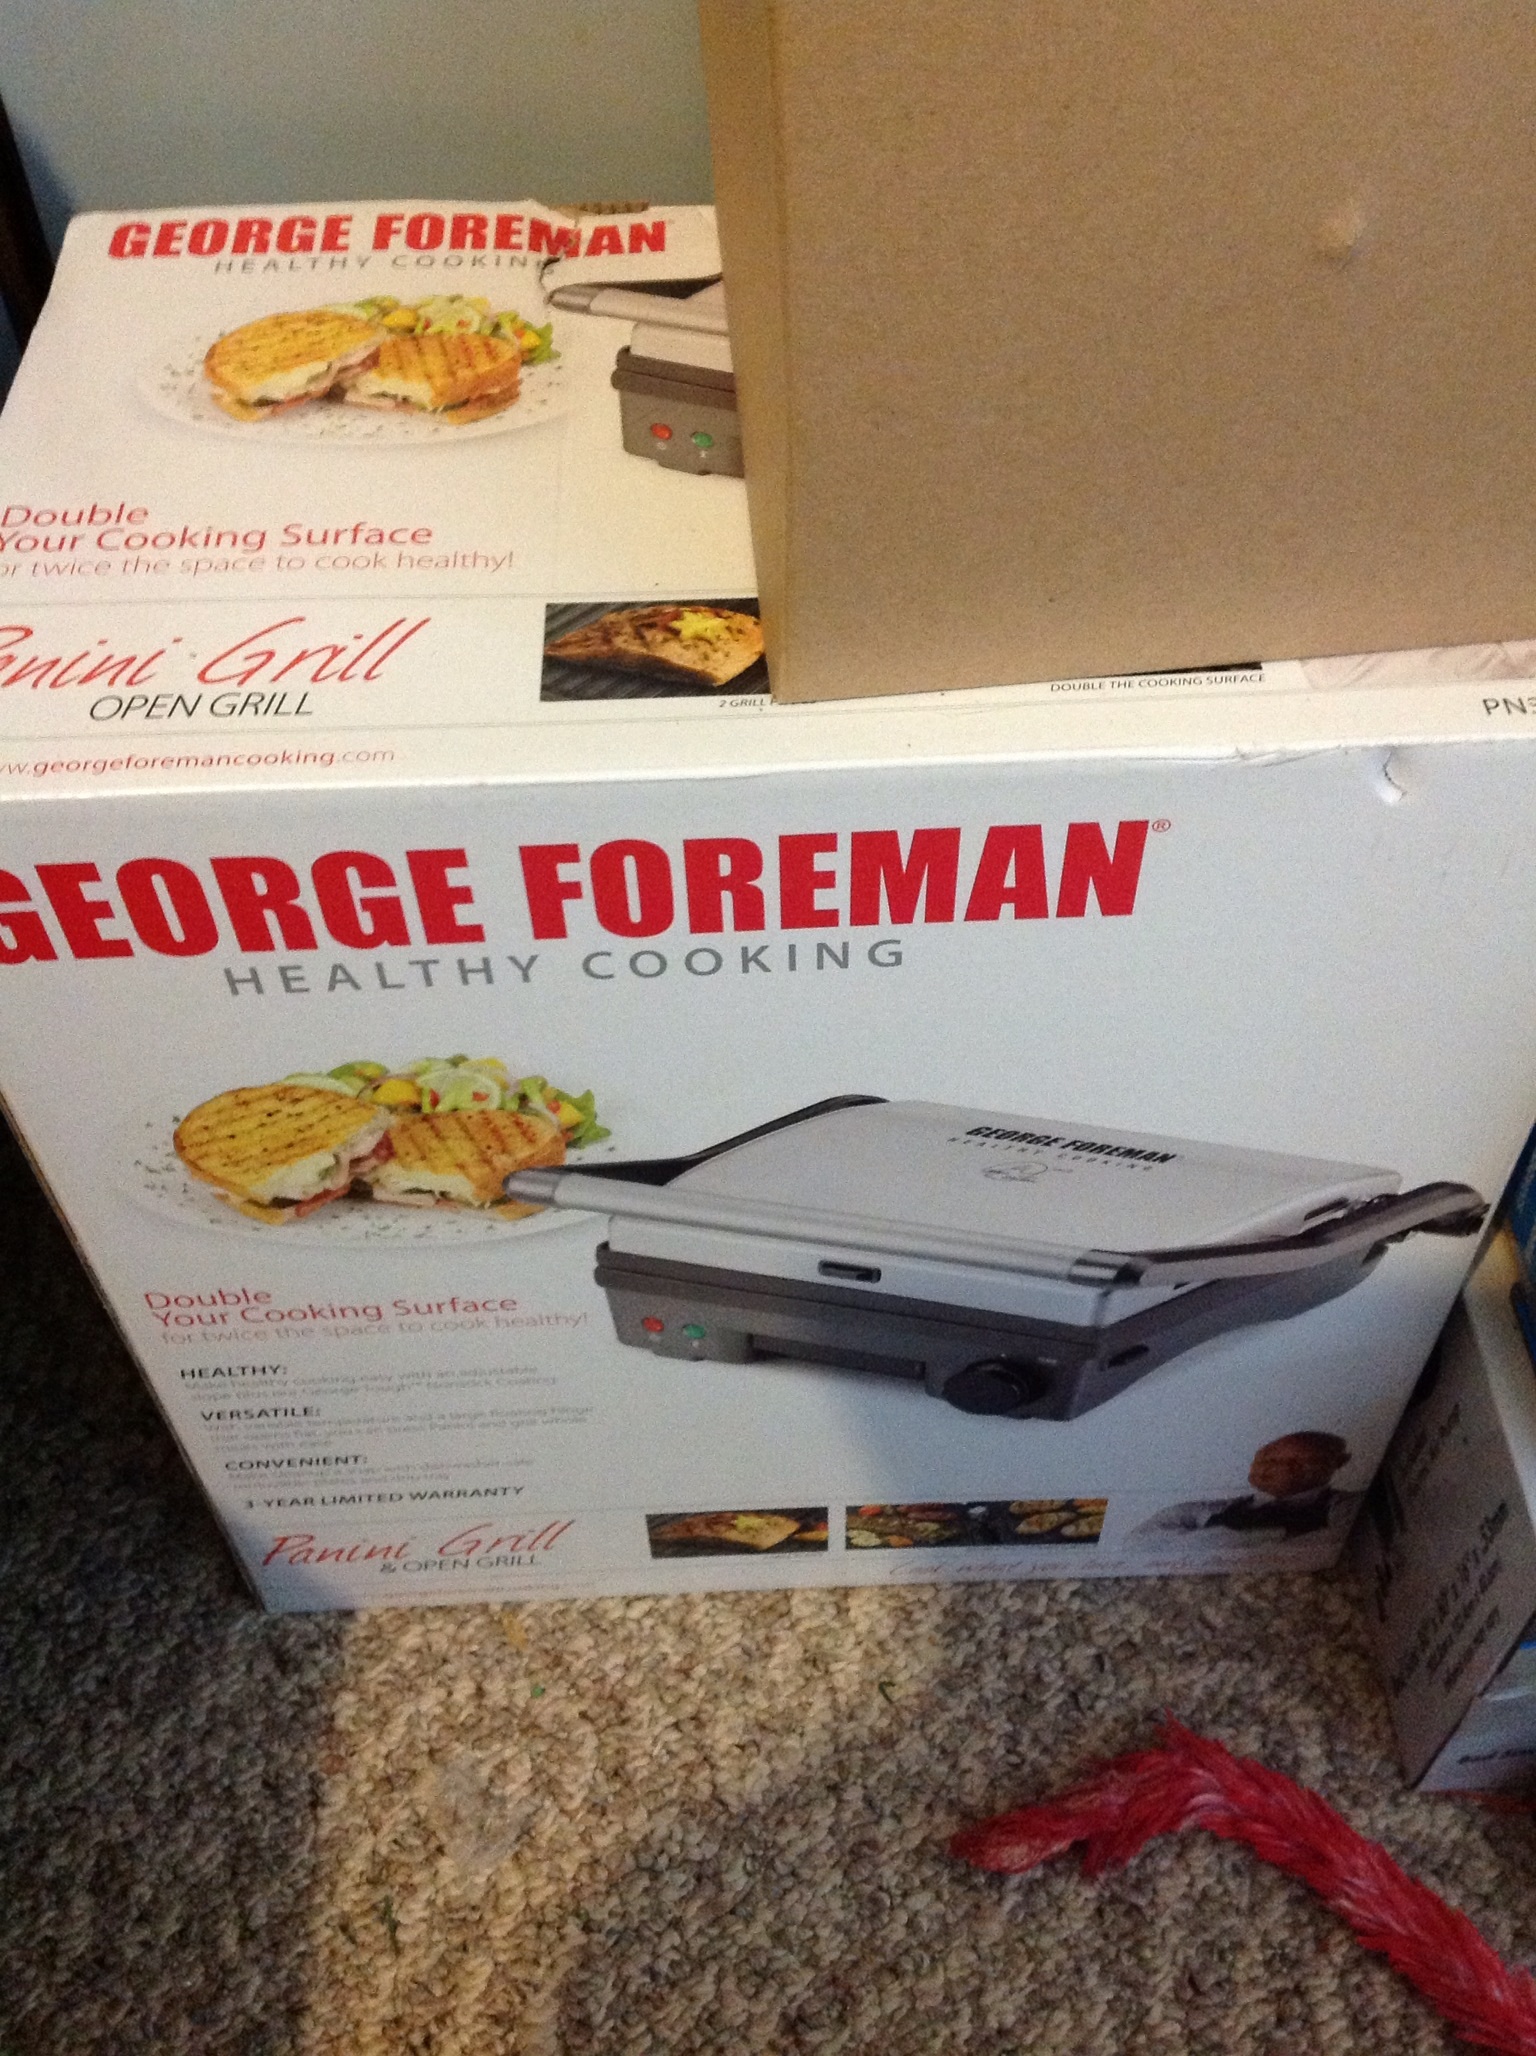 George Forman panini grill